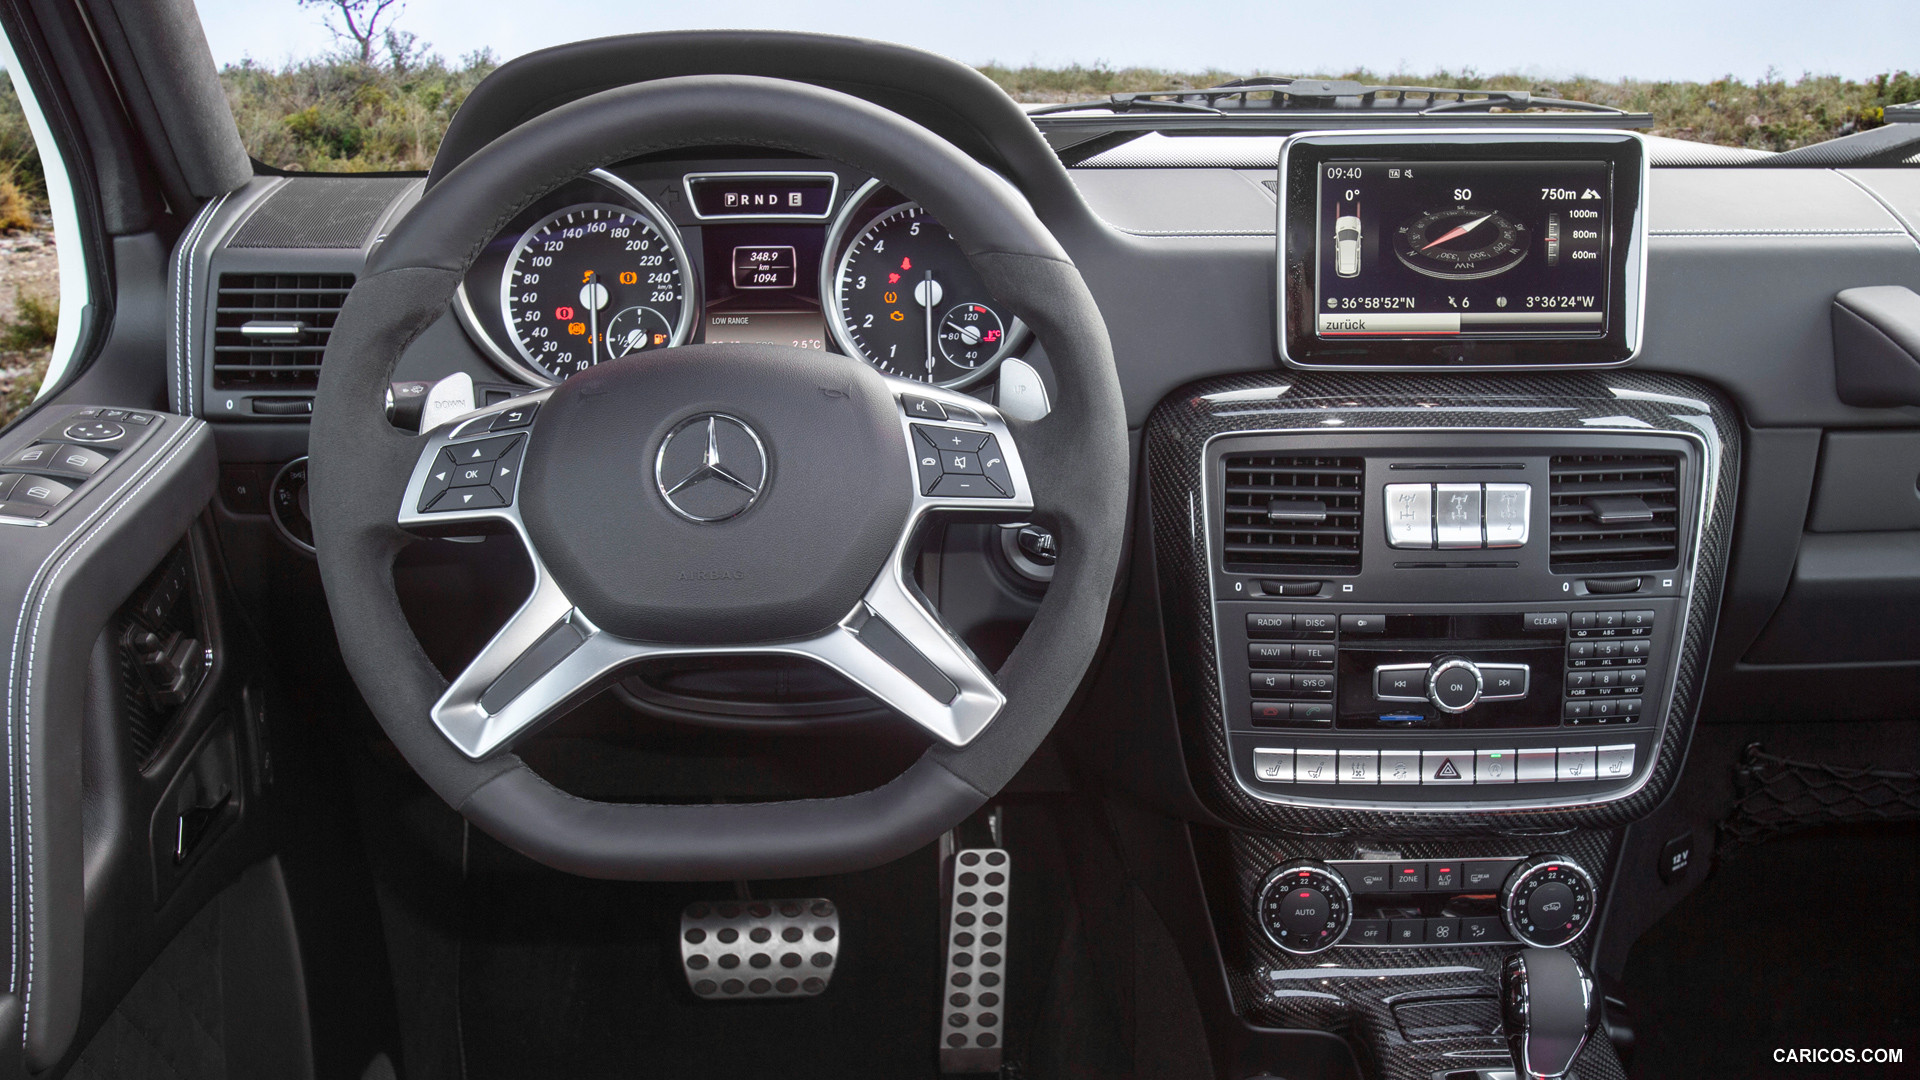 2015 Mercedes Benz G500 4x4 Concept Interior Hd